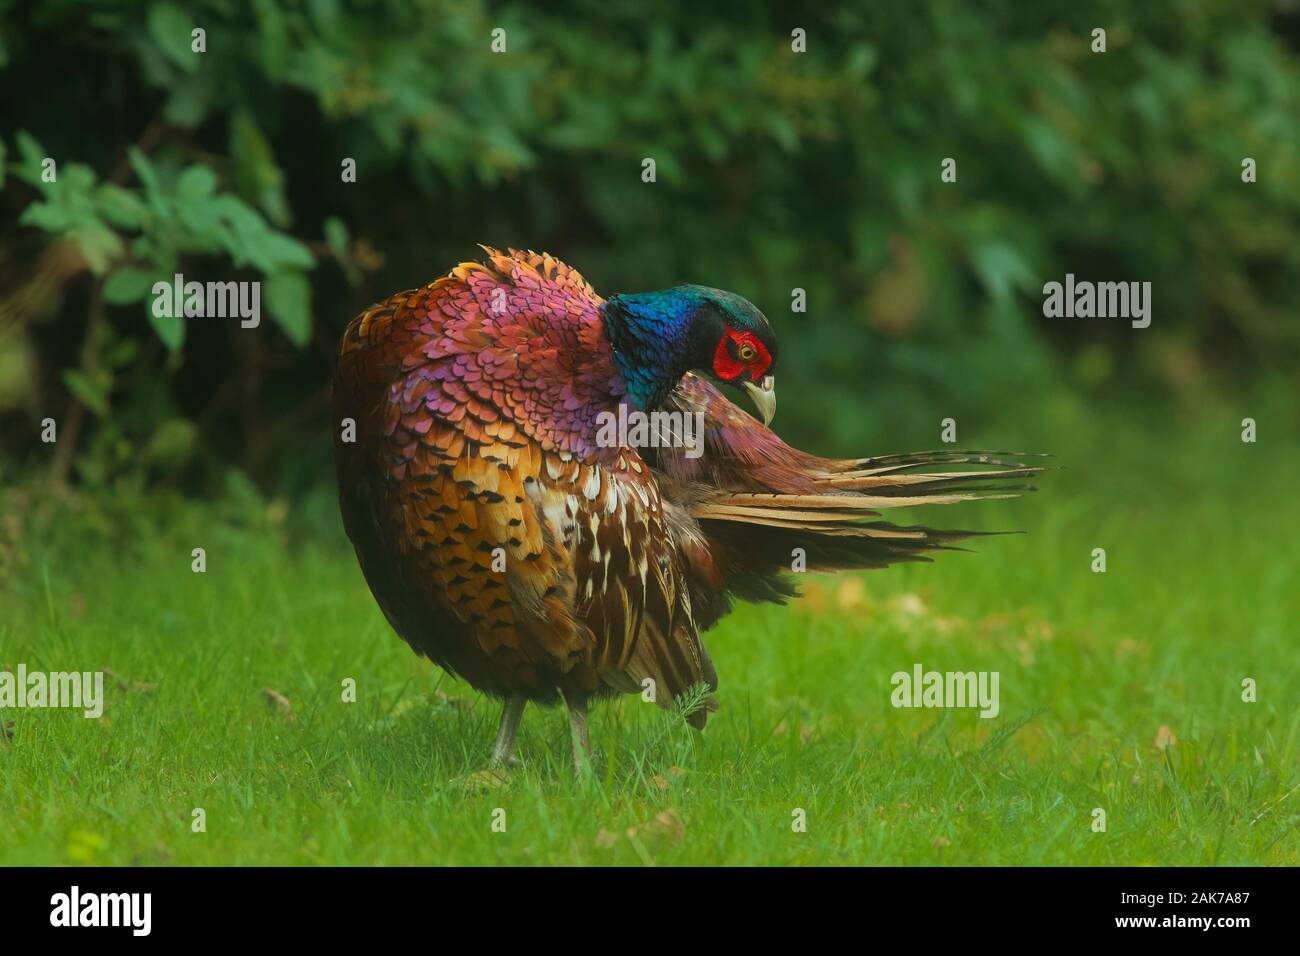 Fagiano maschio toelettatura del suo piumaggio con colori vivaci e tonalità in grassetto Foto Stock